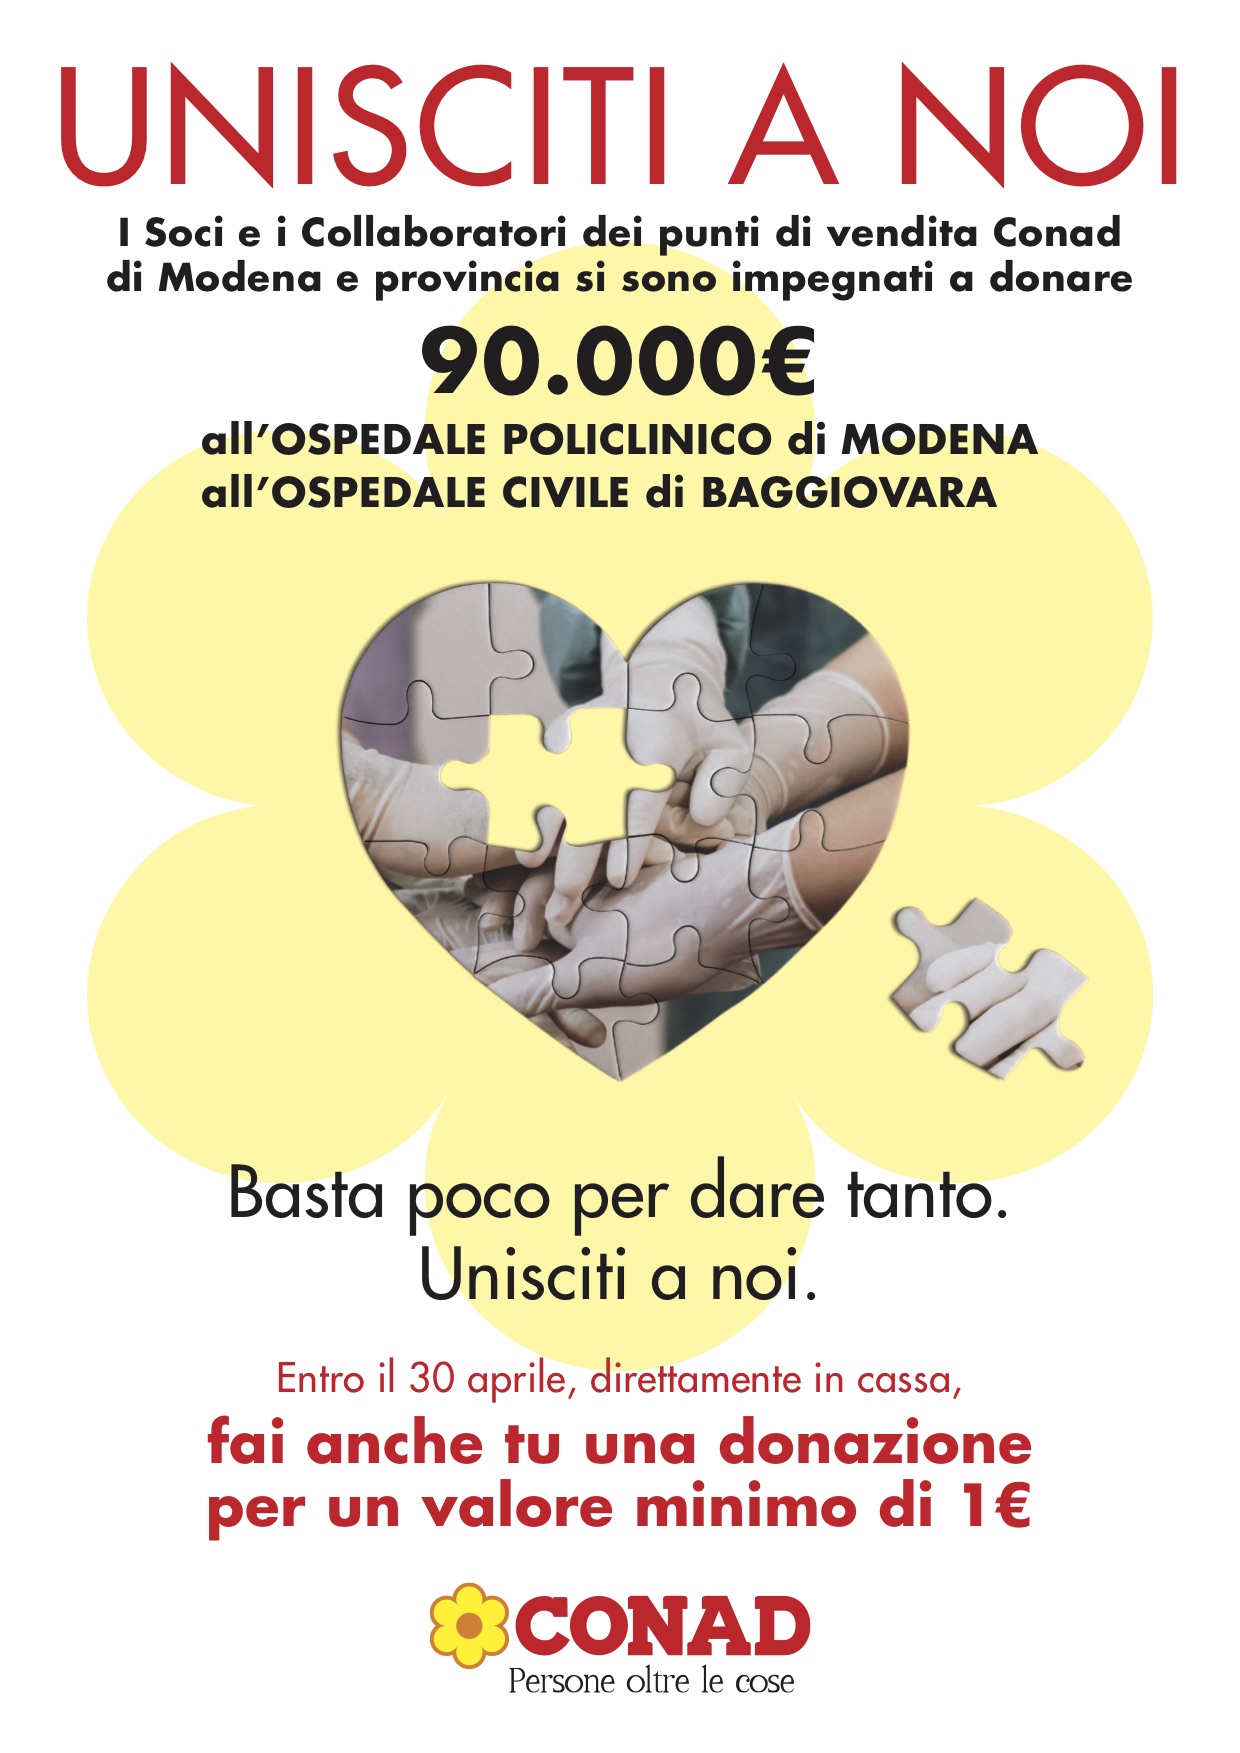 “Unisciti a noi”: Conad dona 115.000 euro agli ospedali di Modena e Ferrara e lancia la raccolta fondi nei punti vendita